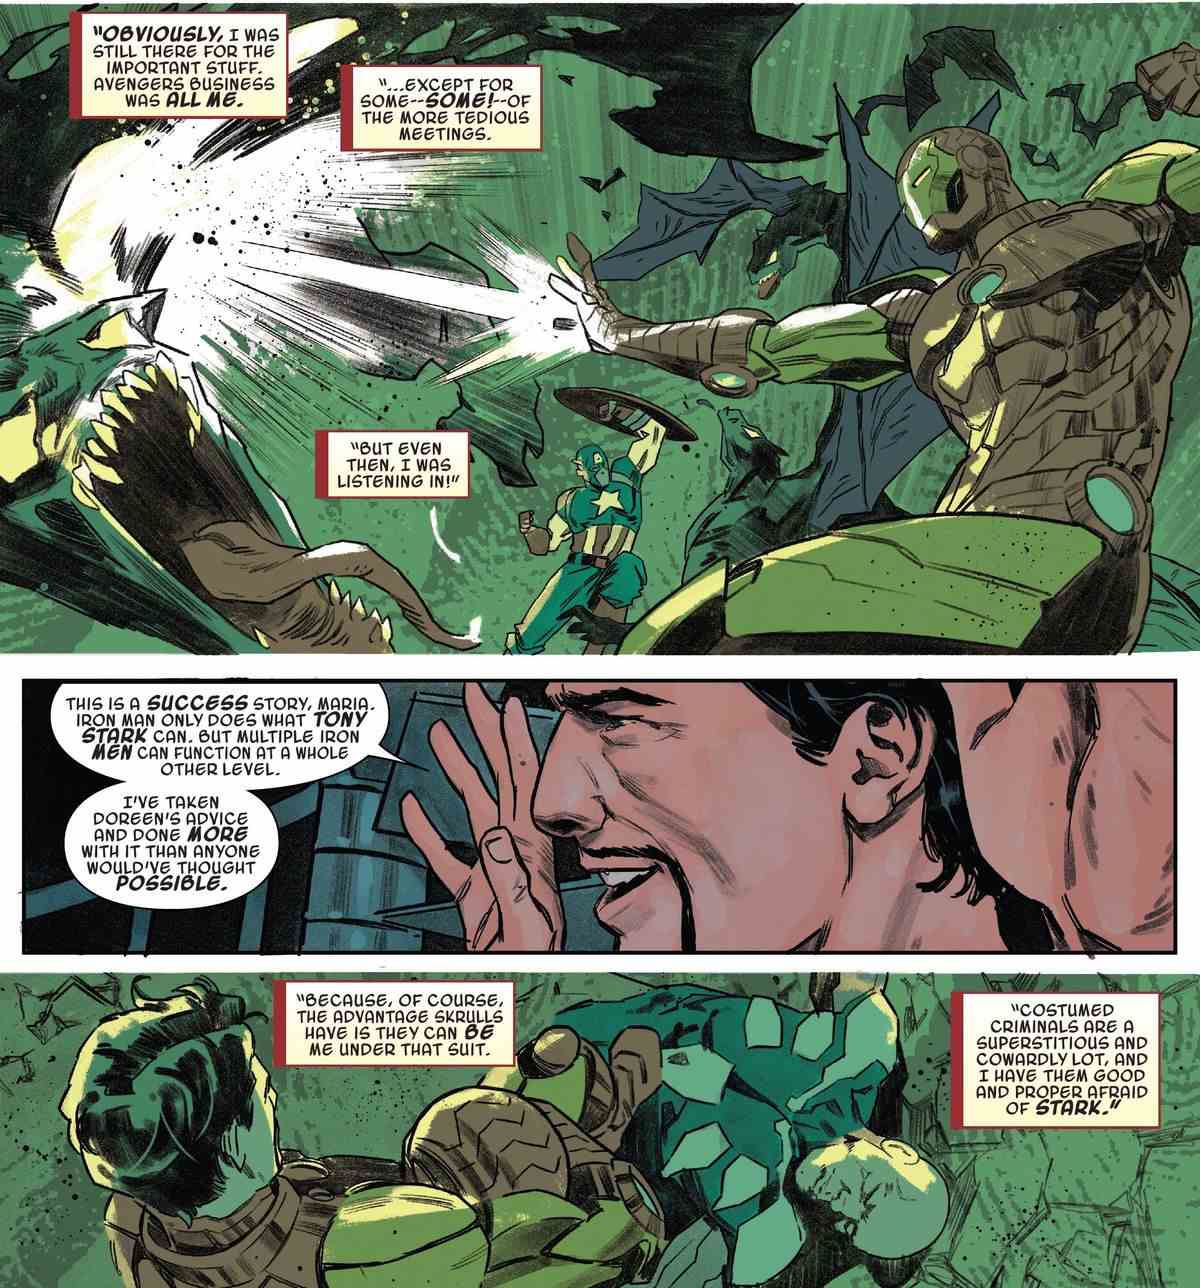 Iron Man explique que son projet d'embaucher des Skrulls pour se faire passer pour lui et faire un travail de super-héros a été inspiré par Squirrel Girl.  